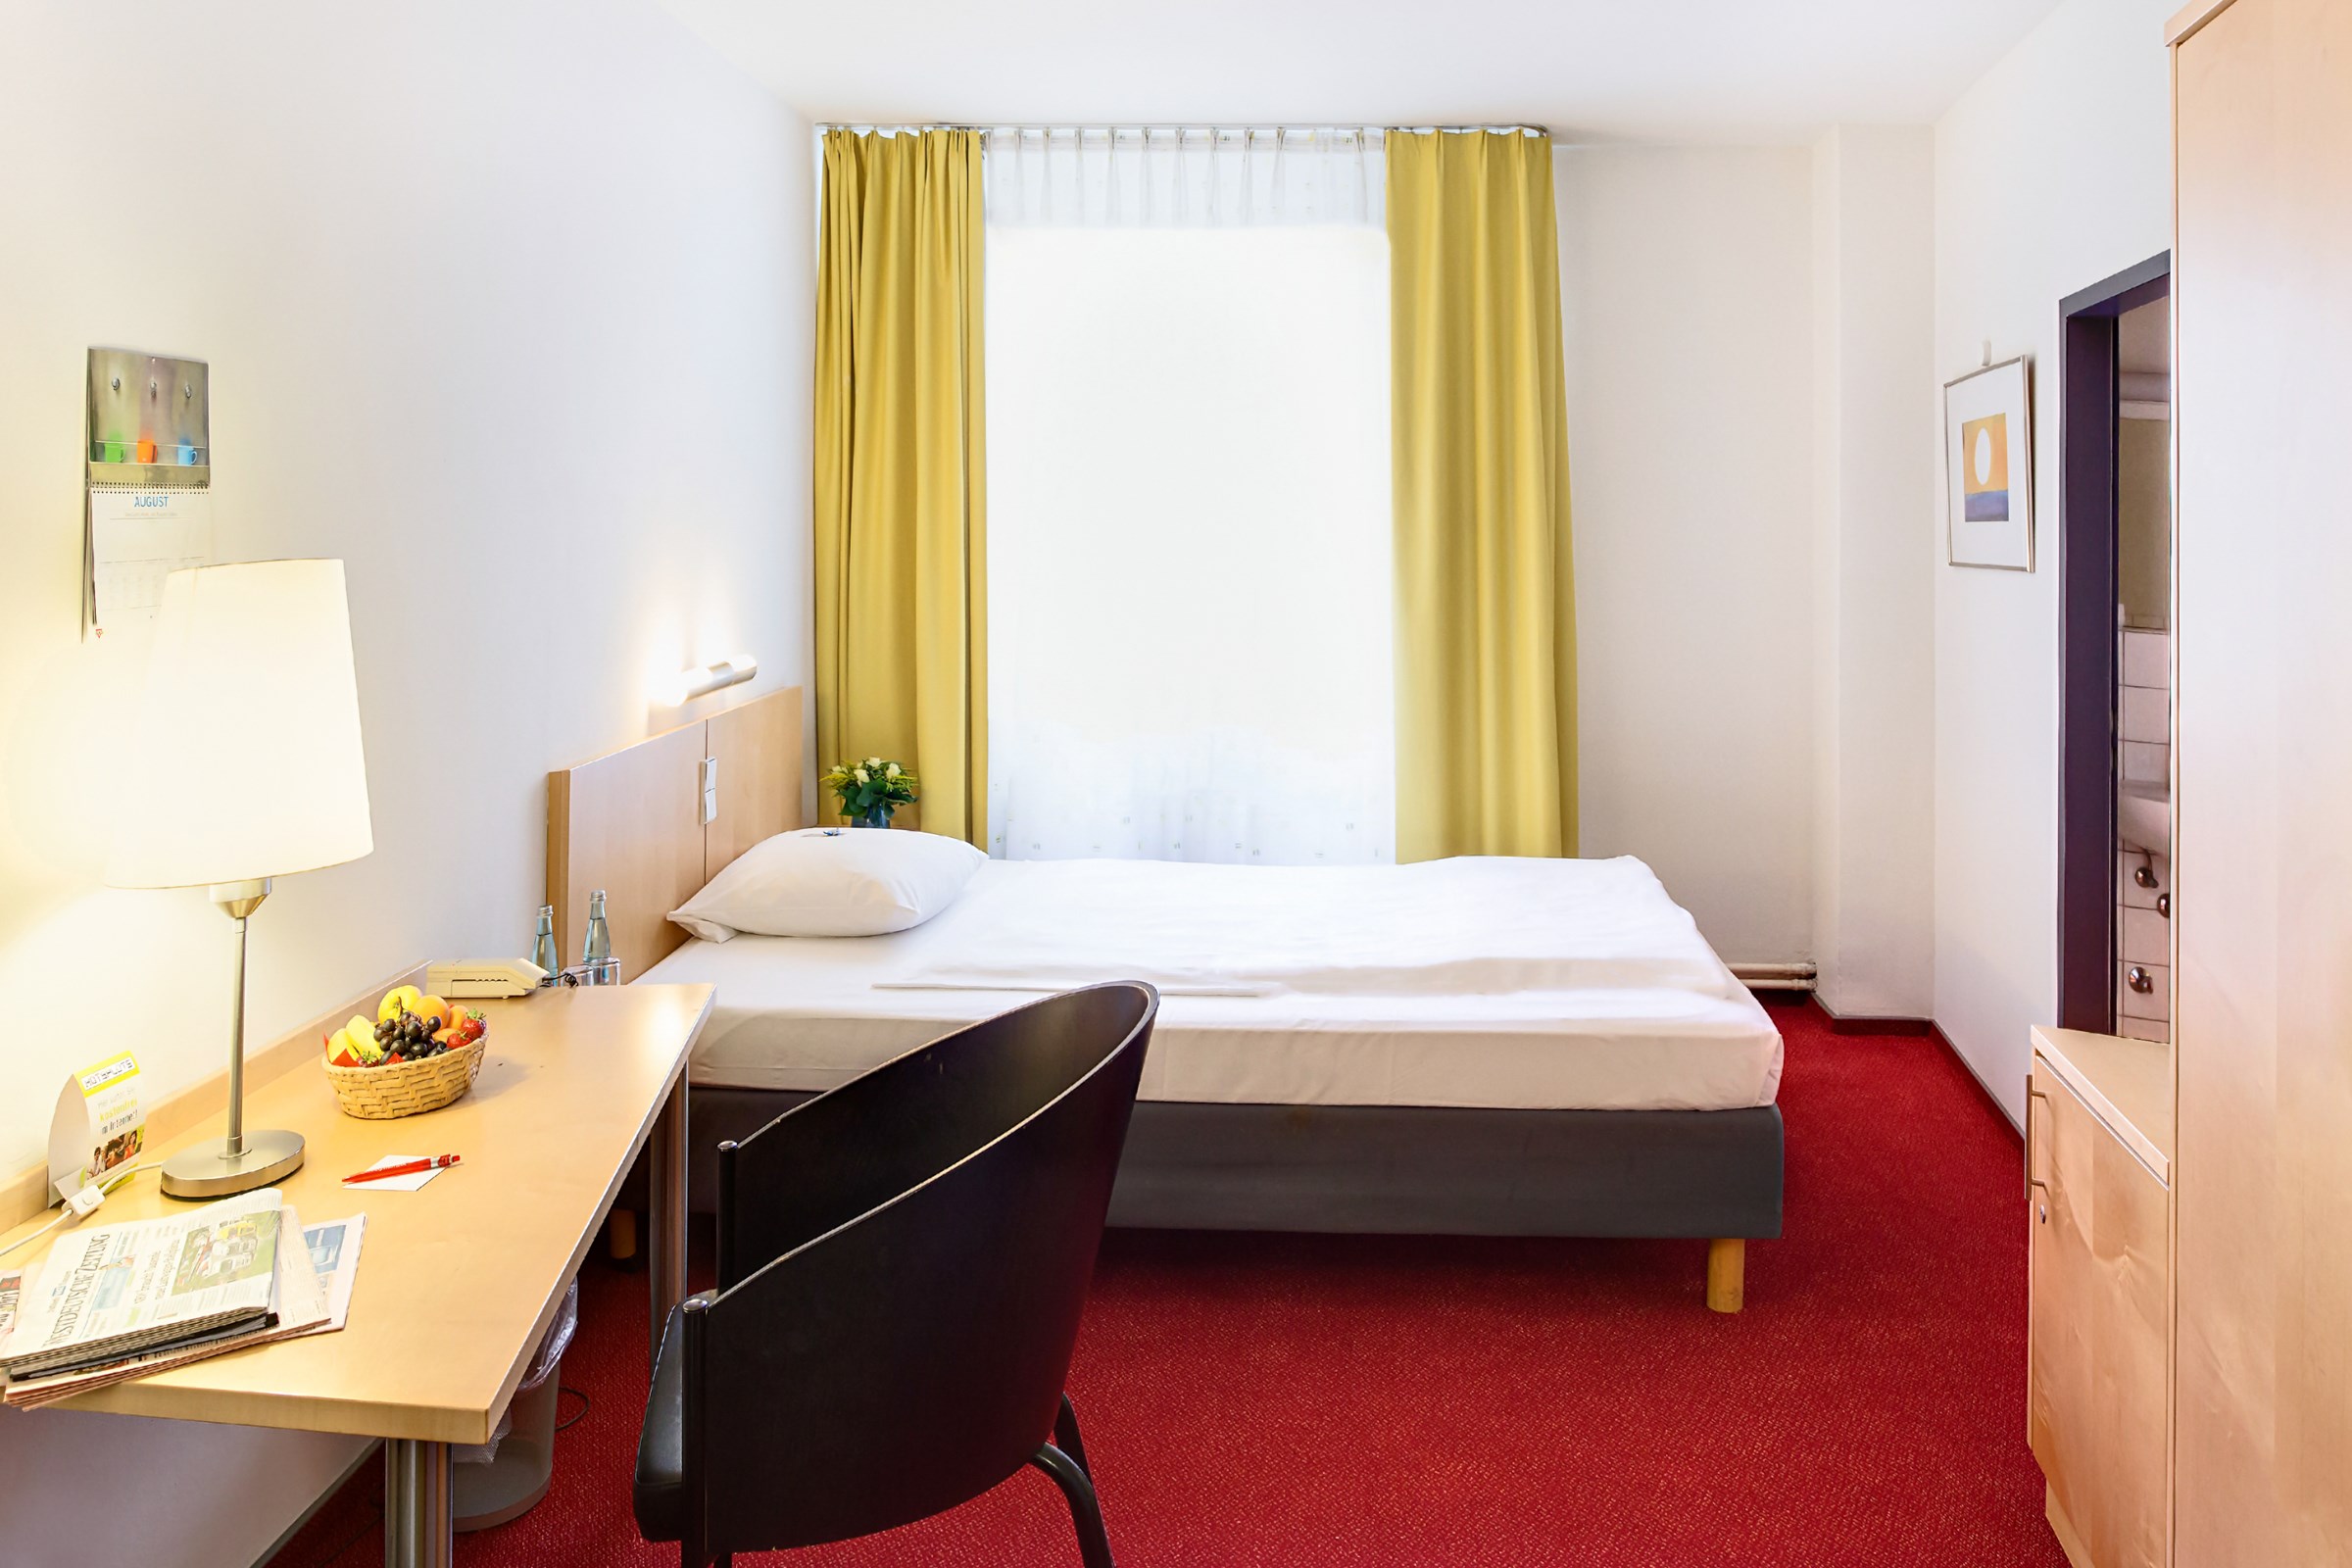 001gastfreunde-cvjm-duesseldorf-hotel-und-tagung-komfort-einzelzimmer.jpg